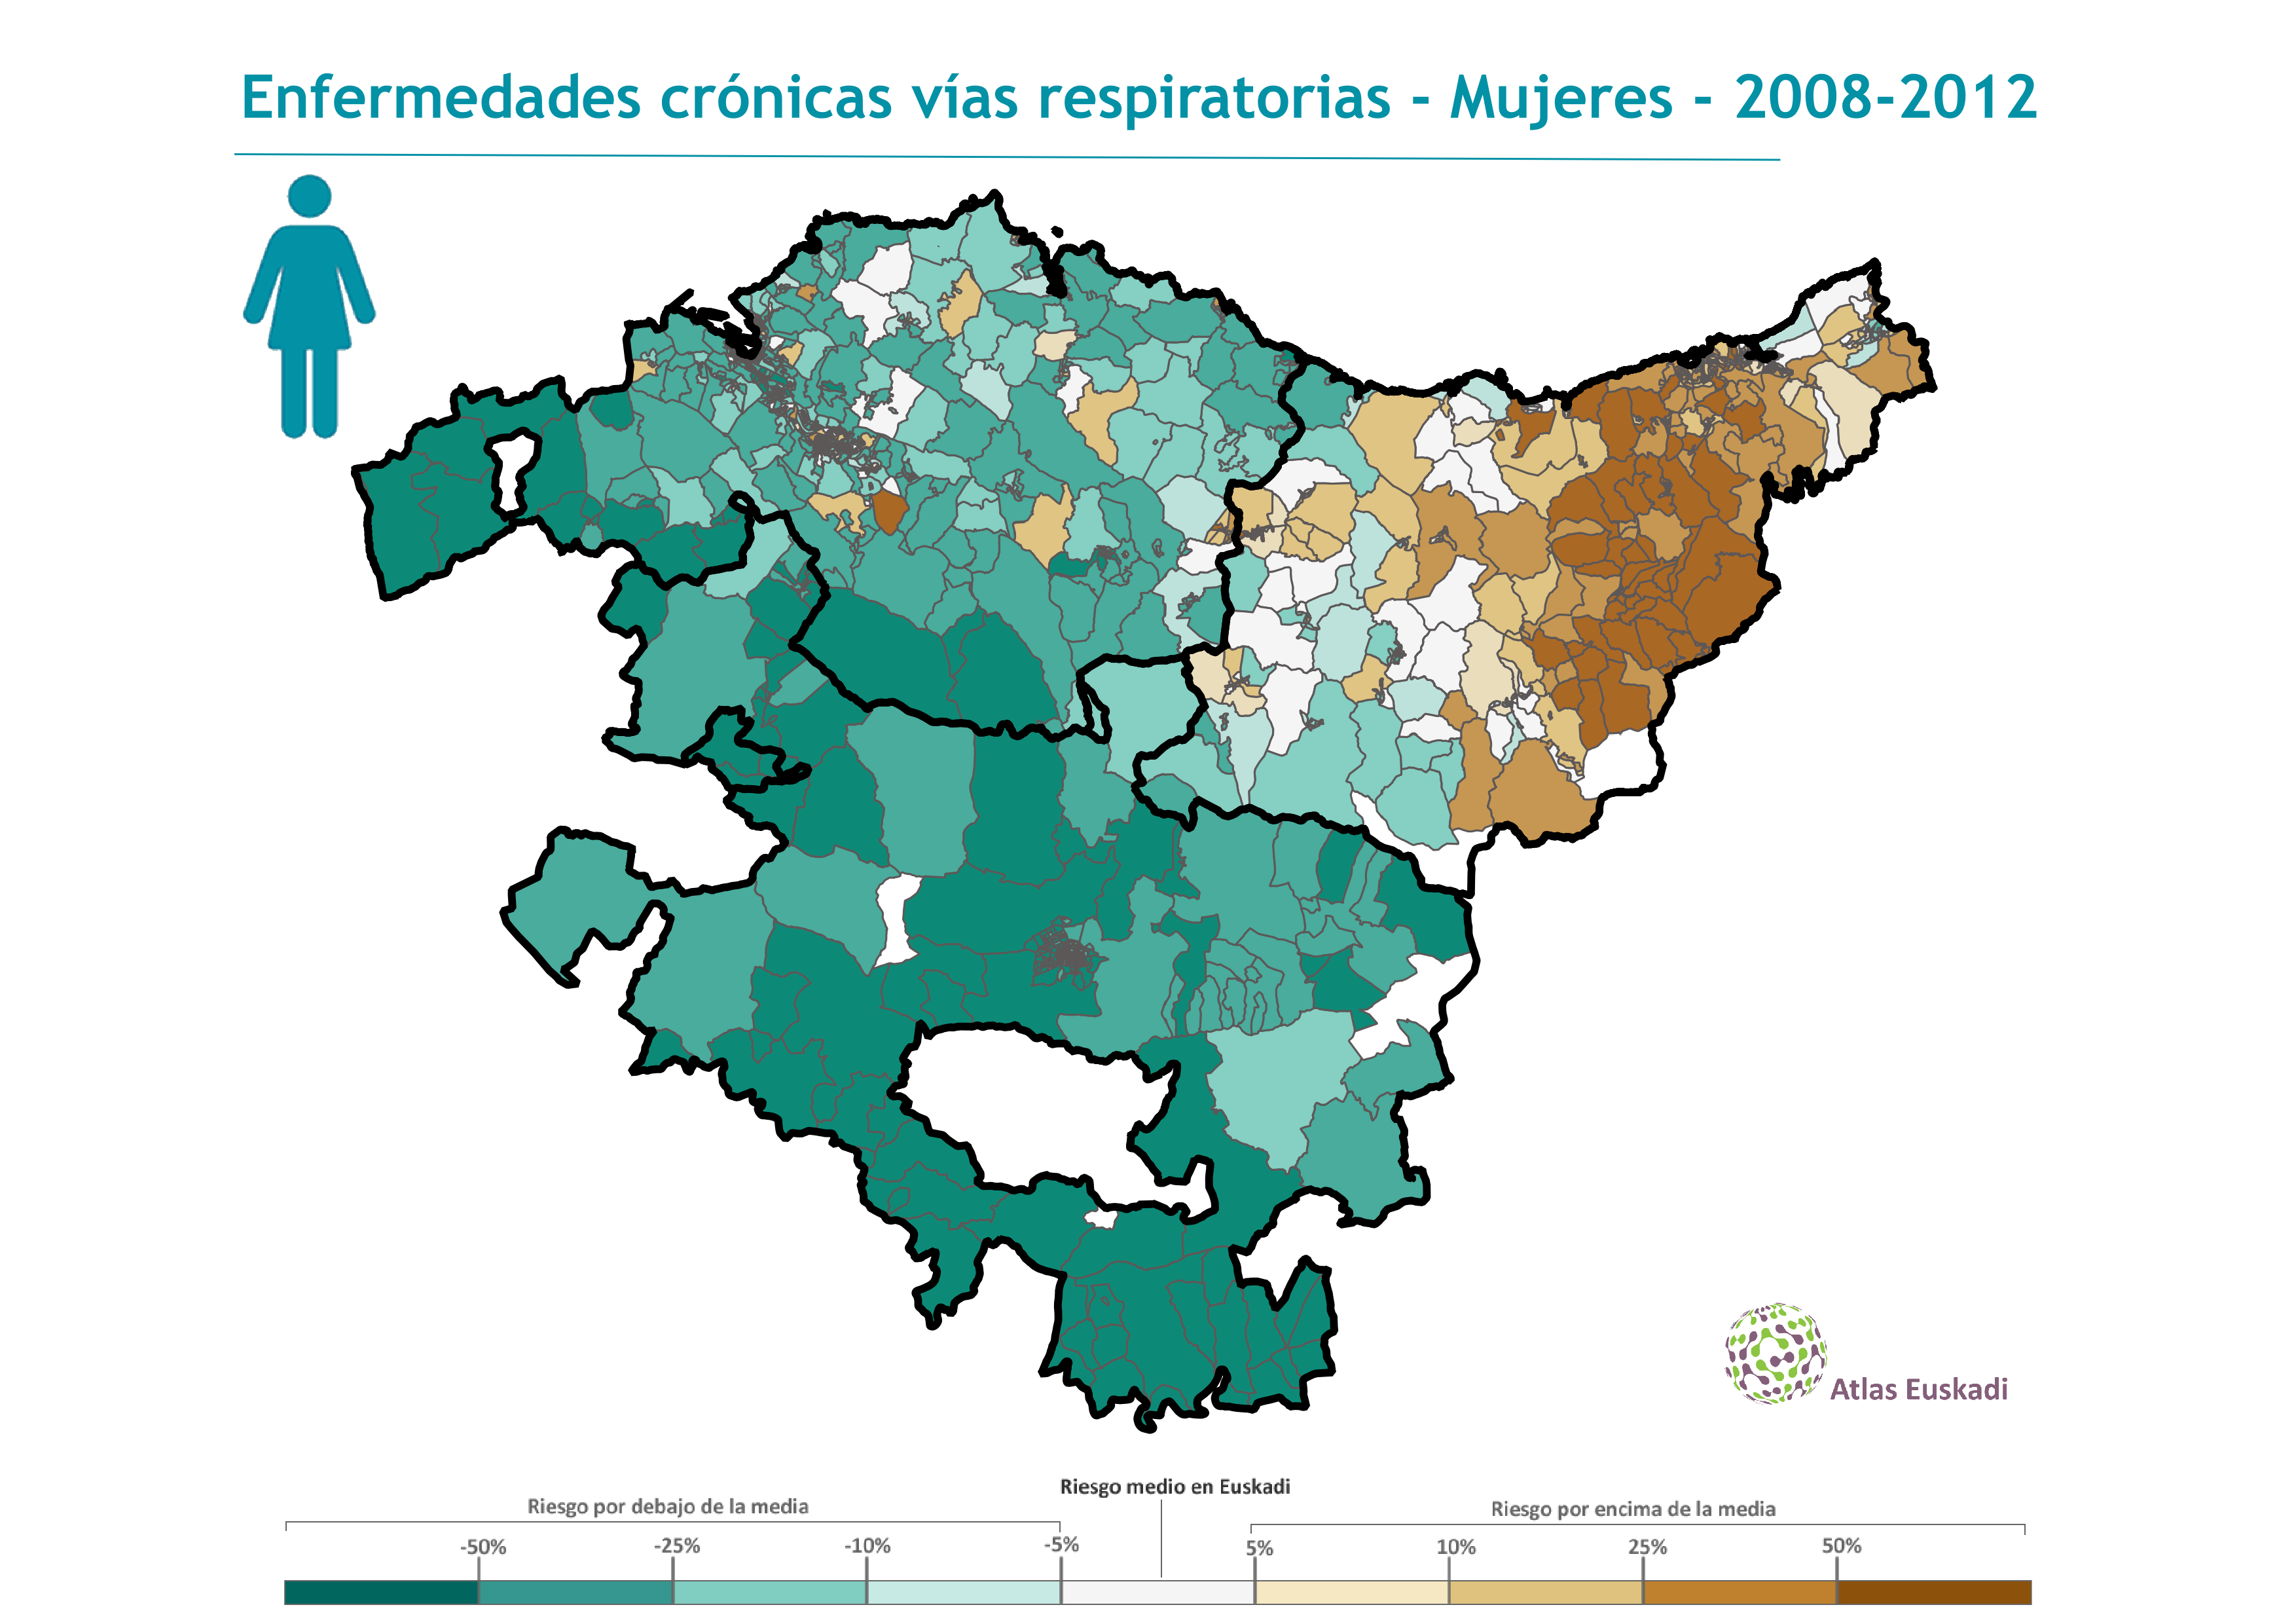 Enfermedades crónicas vías respiratorias (EPOC) mujeres  2008-2012 Euskadi